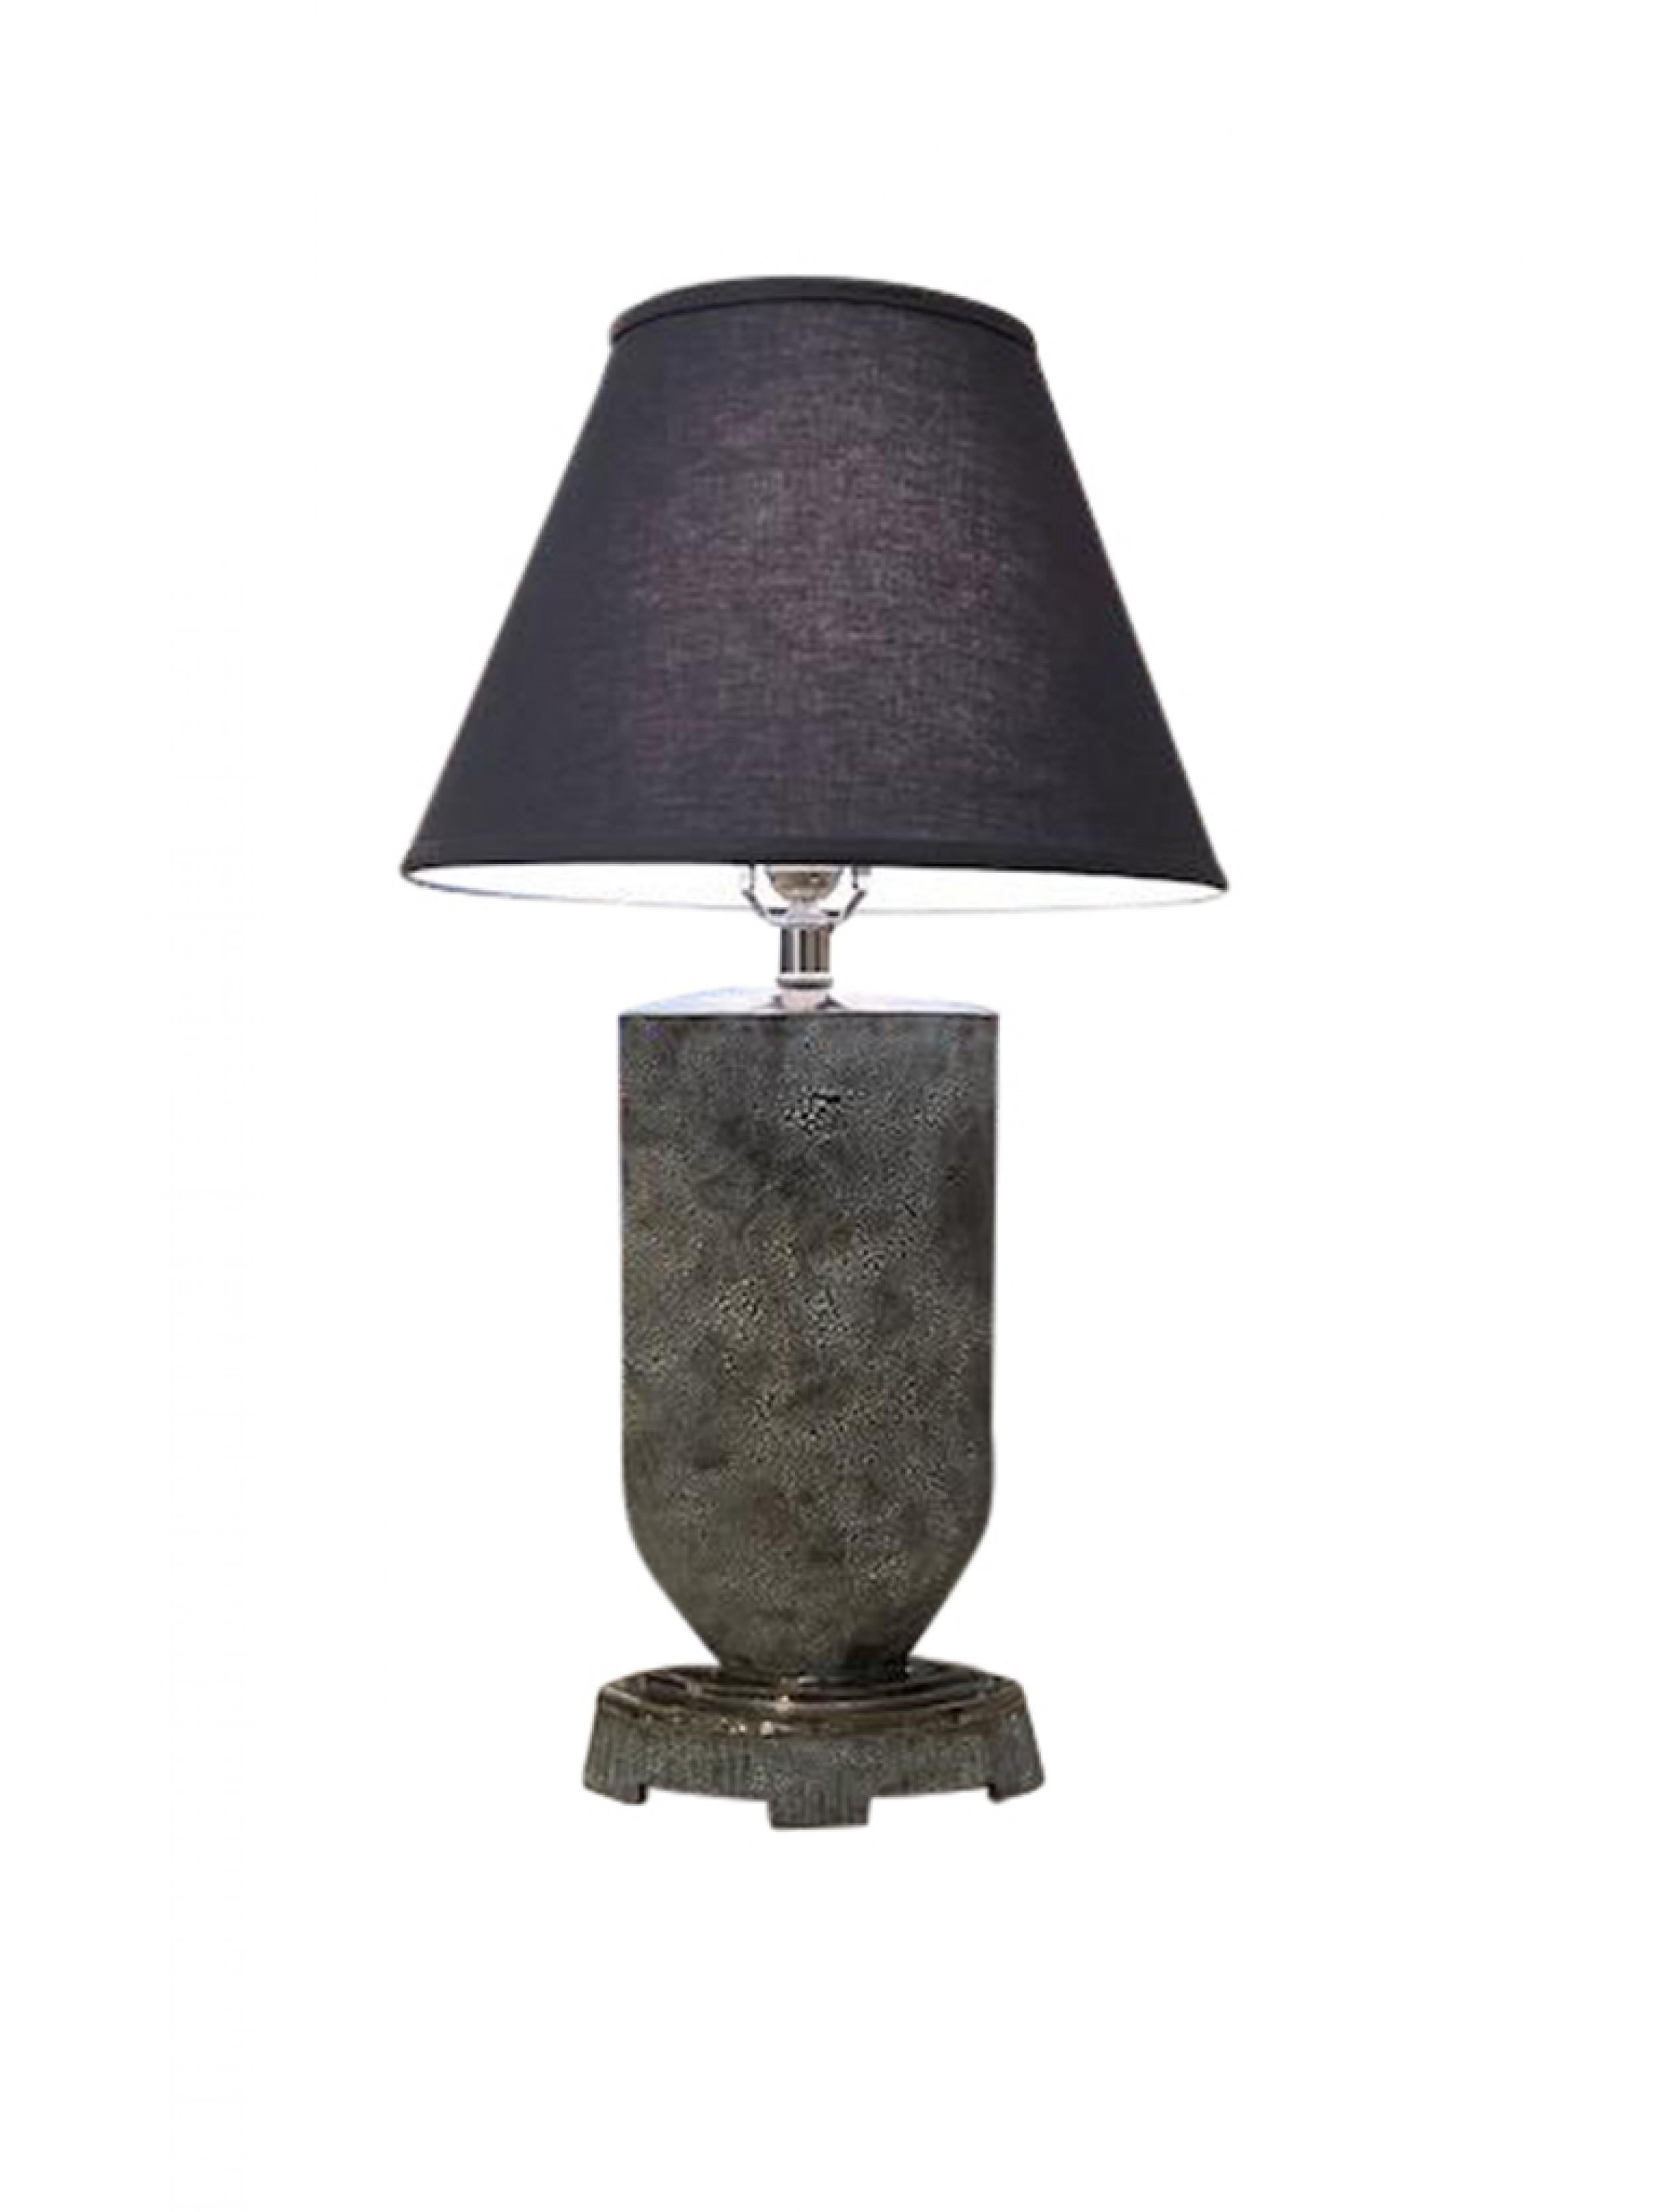 Lampe américaine d'après-guerre en céramique émaillée noire/bleue de forme cylindrique se terminant par une base ronde (GARY DI PASQUALE)
